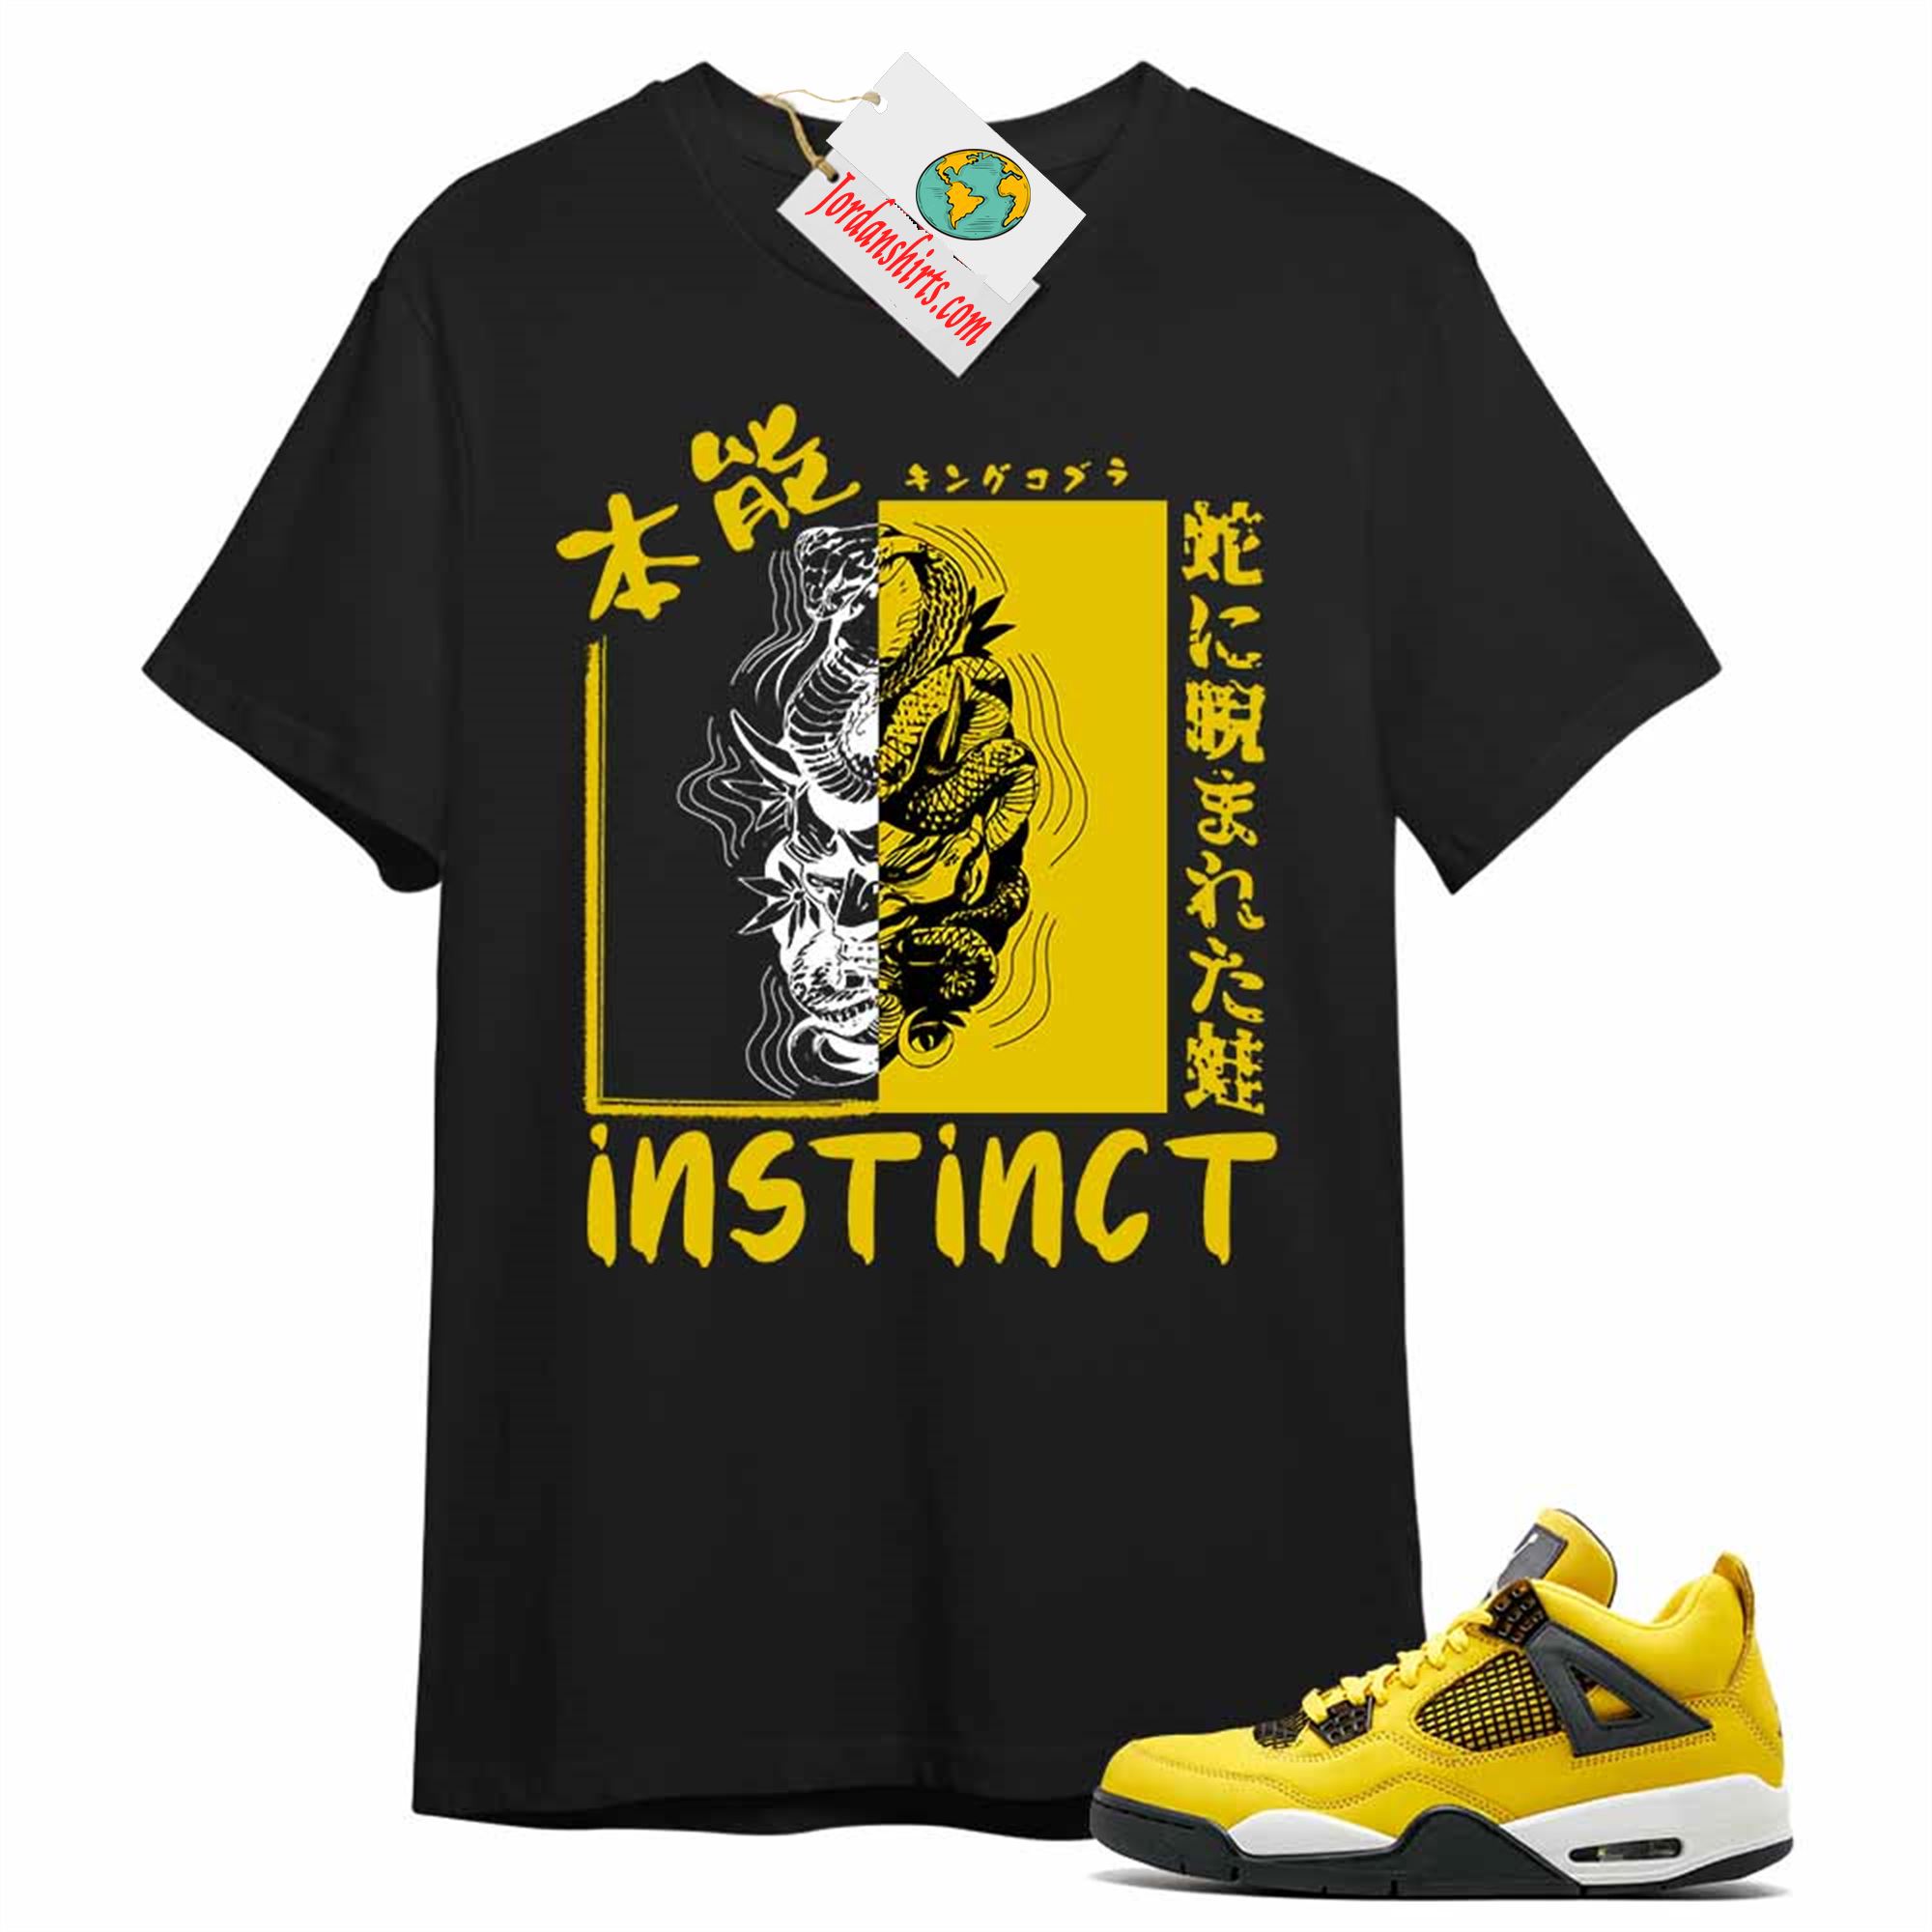 Jordan 4 Shirt, Instinct Fearless Snake Black Air Jordan 4 Tour Yellow Lightning 4s Plus Size Up To 5xl